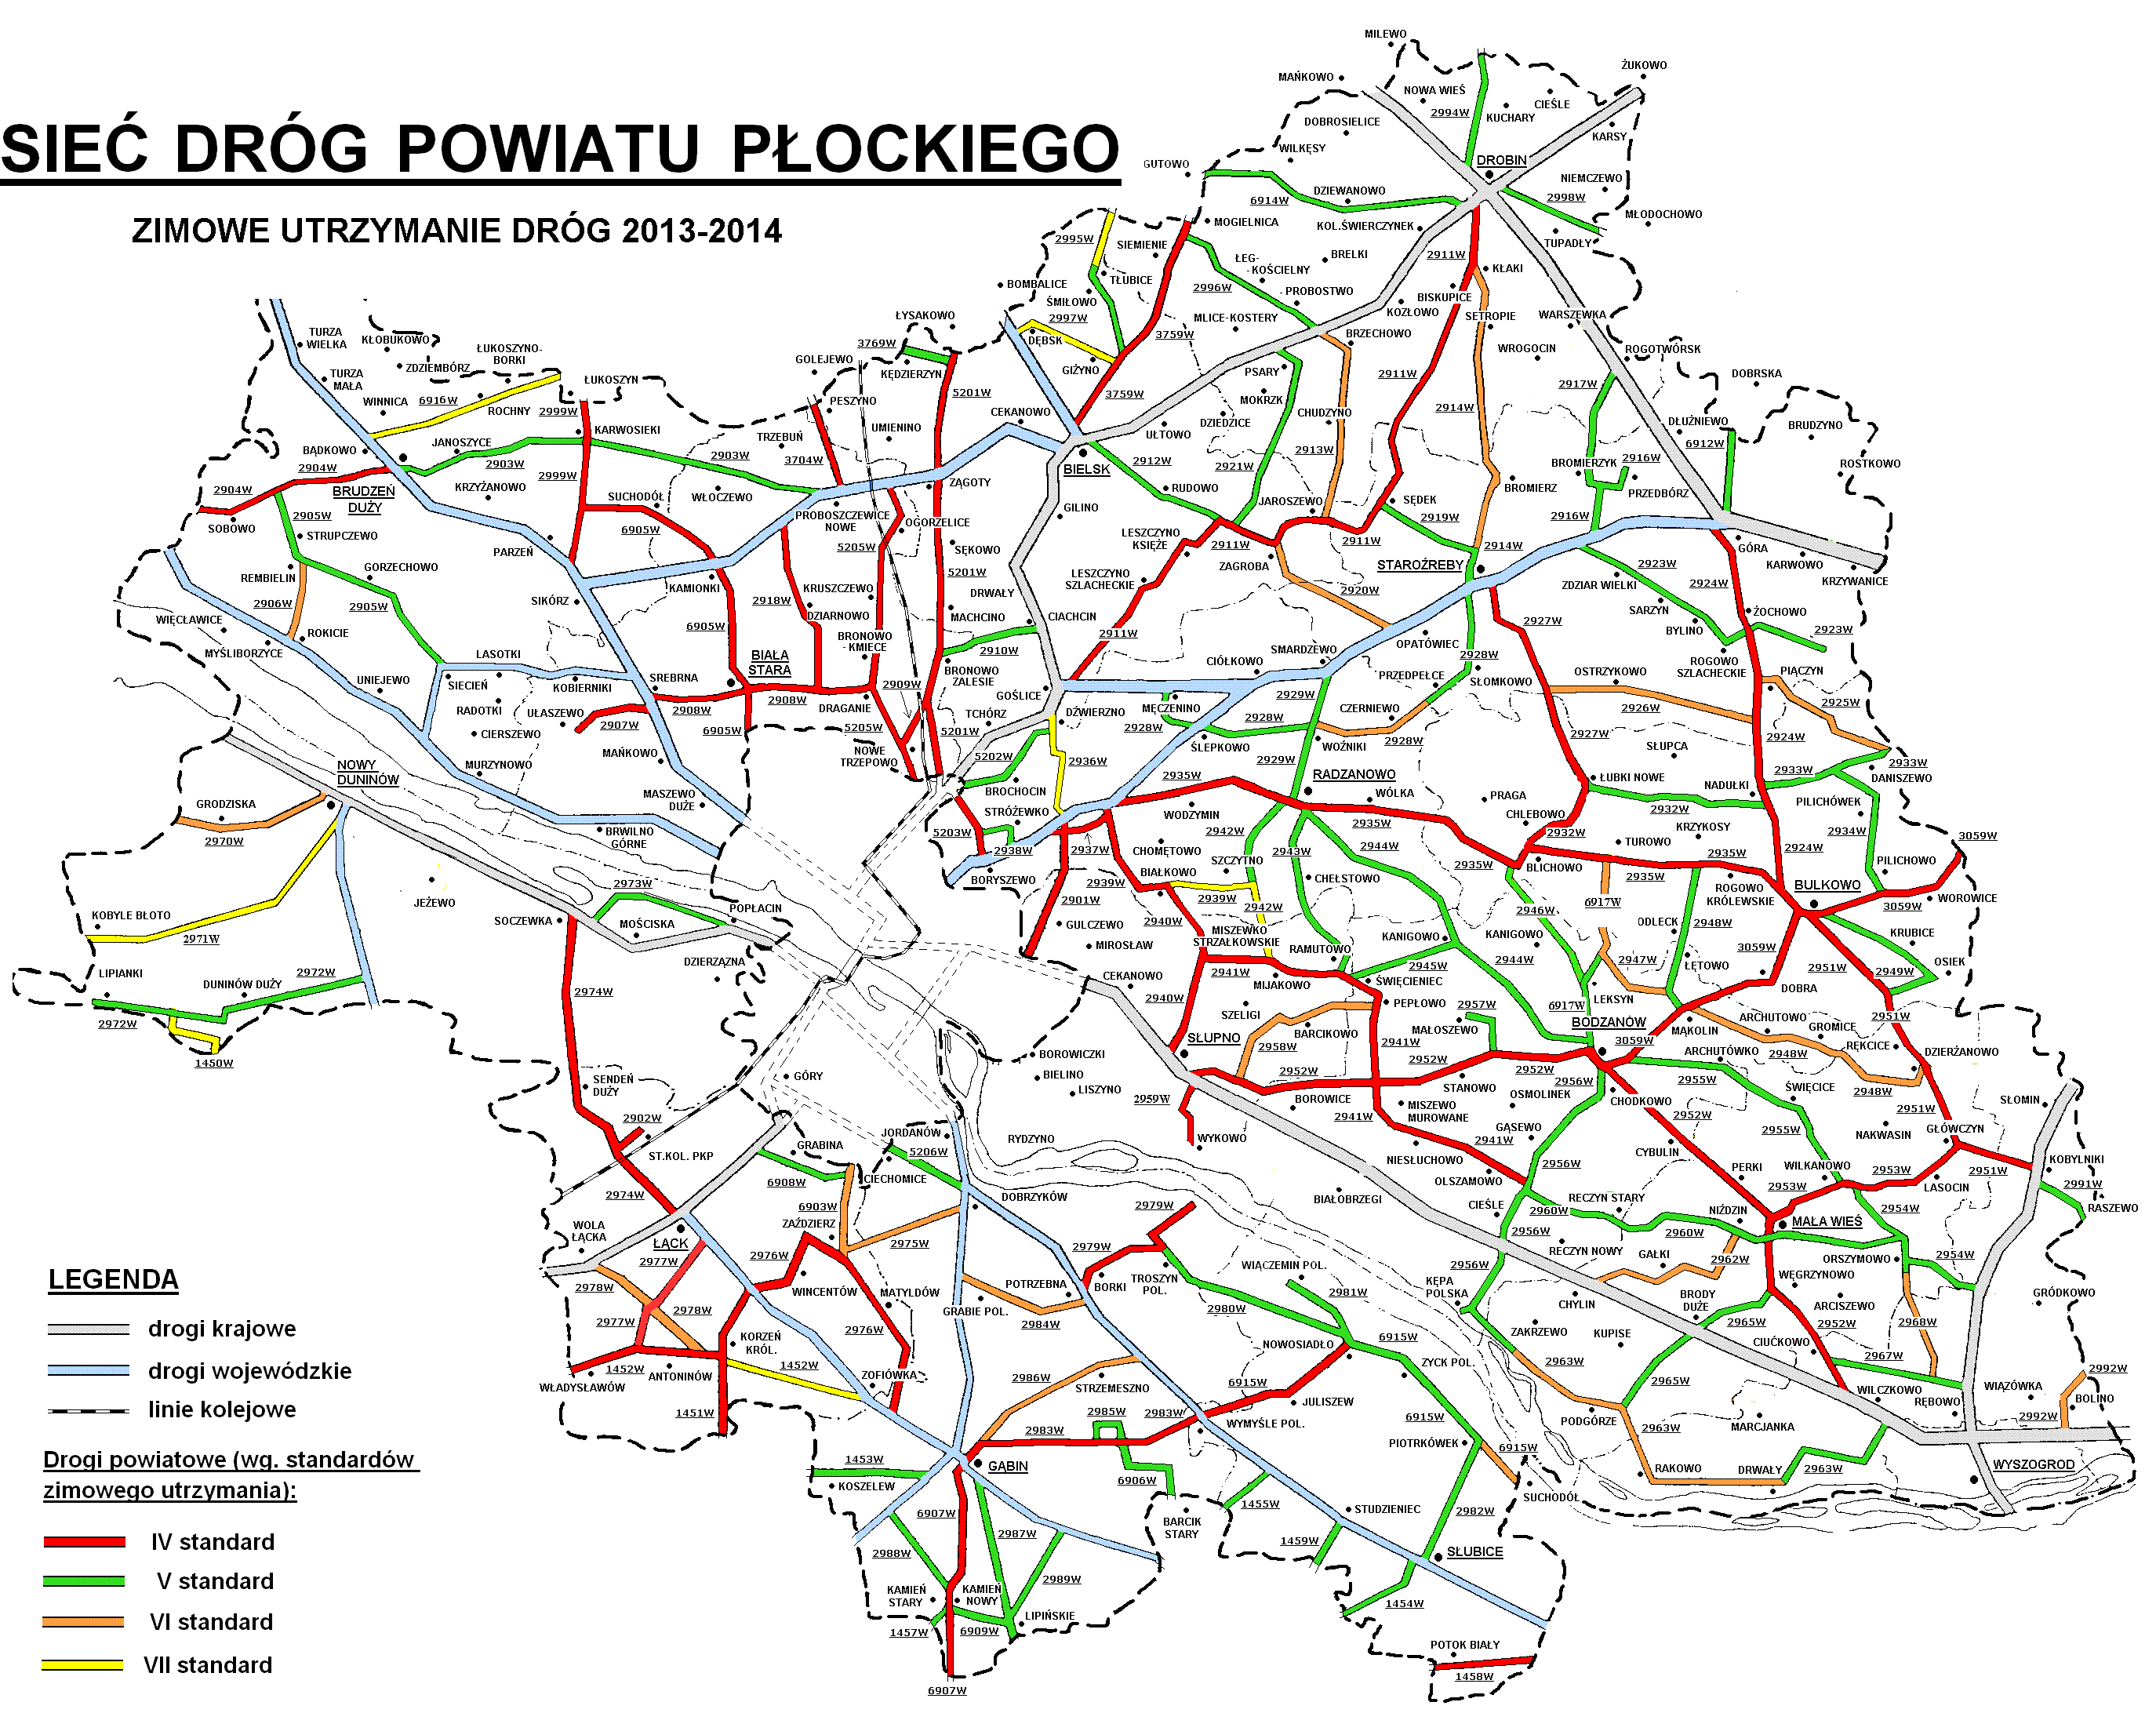 Sieć Dróg Powiatu Płockiego zima 2012-2013